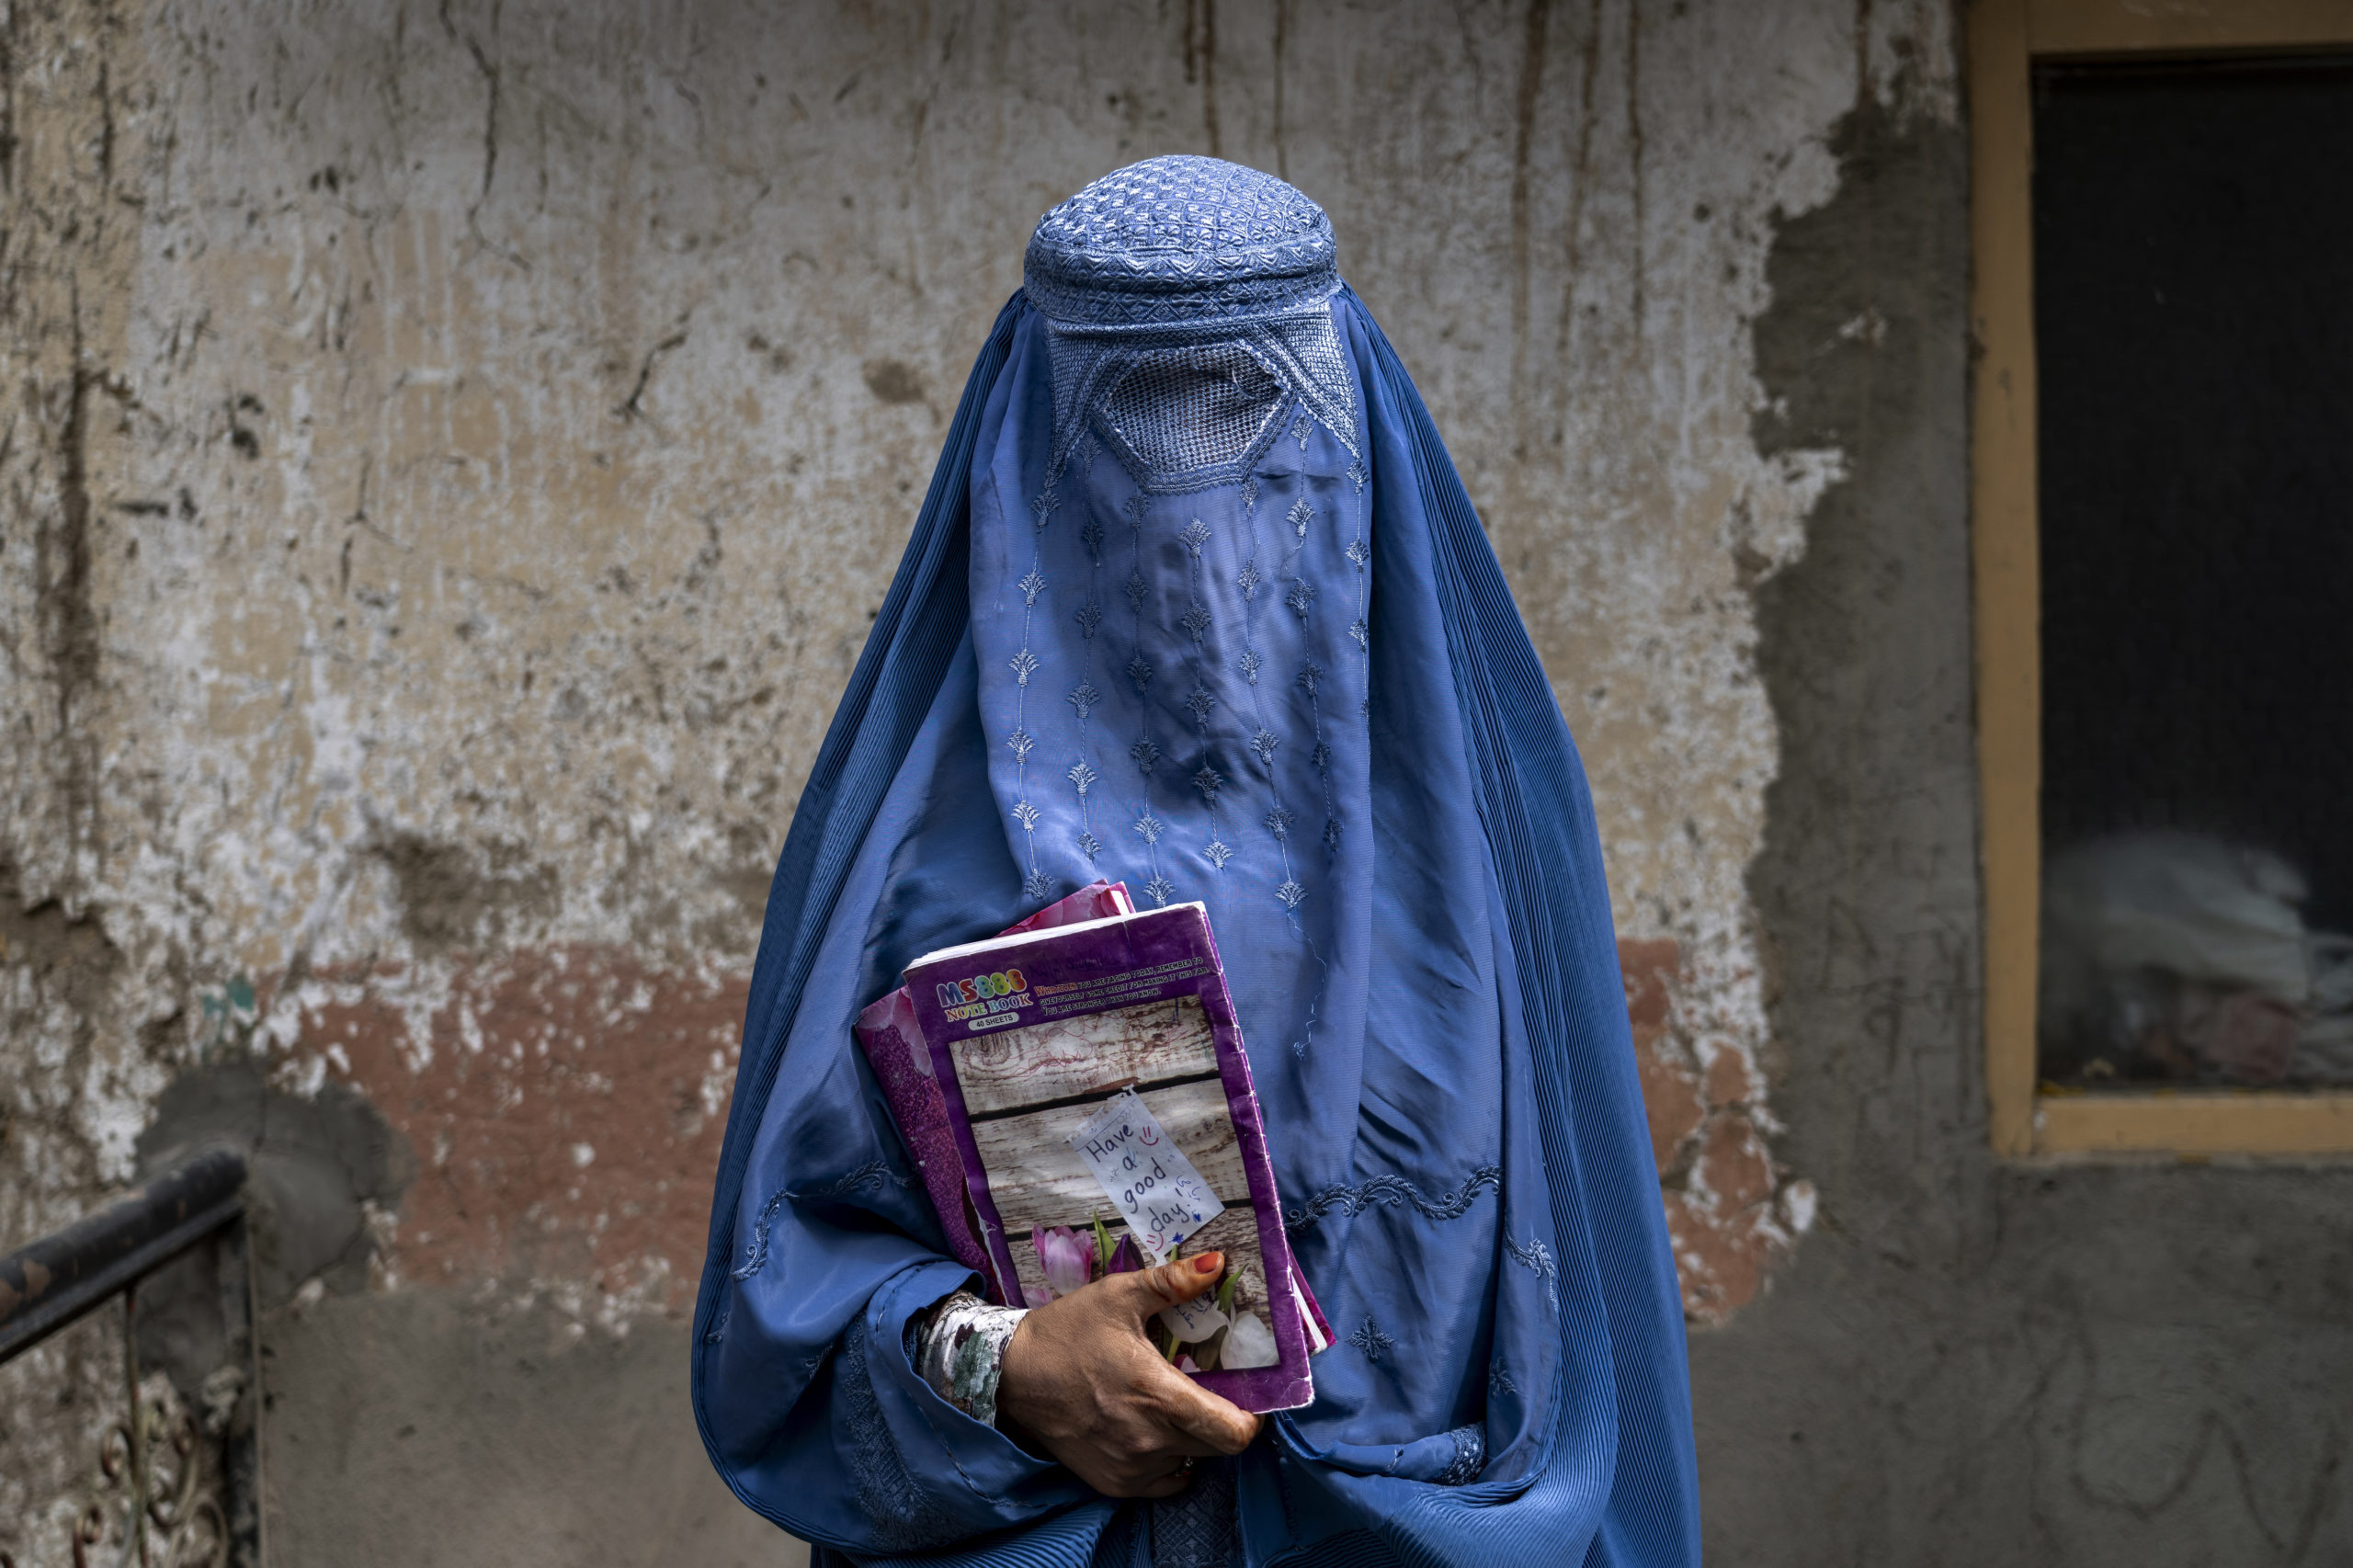 Αφγανιστάν: Διέκοψαν δραστηριότητα τουλάχιστον 4 διεθνείς MKO αφού οι Ταλιμπάν τους απαγόρευσαν να απασχολούν γυναίκες